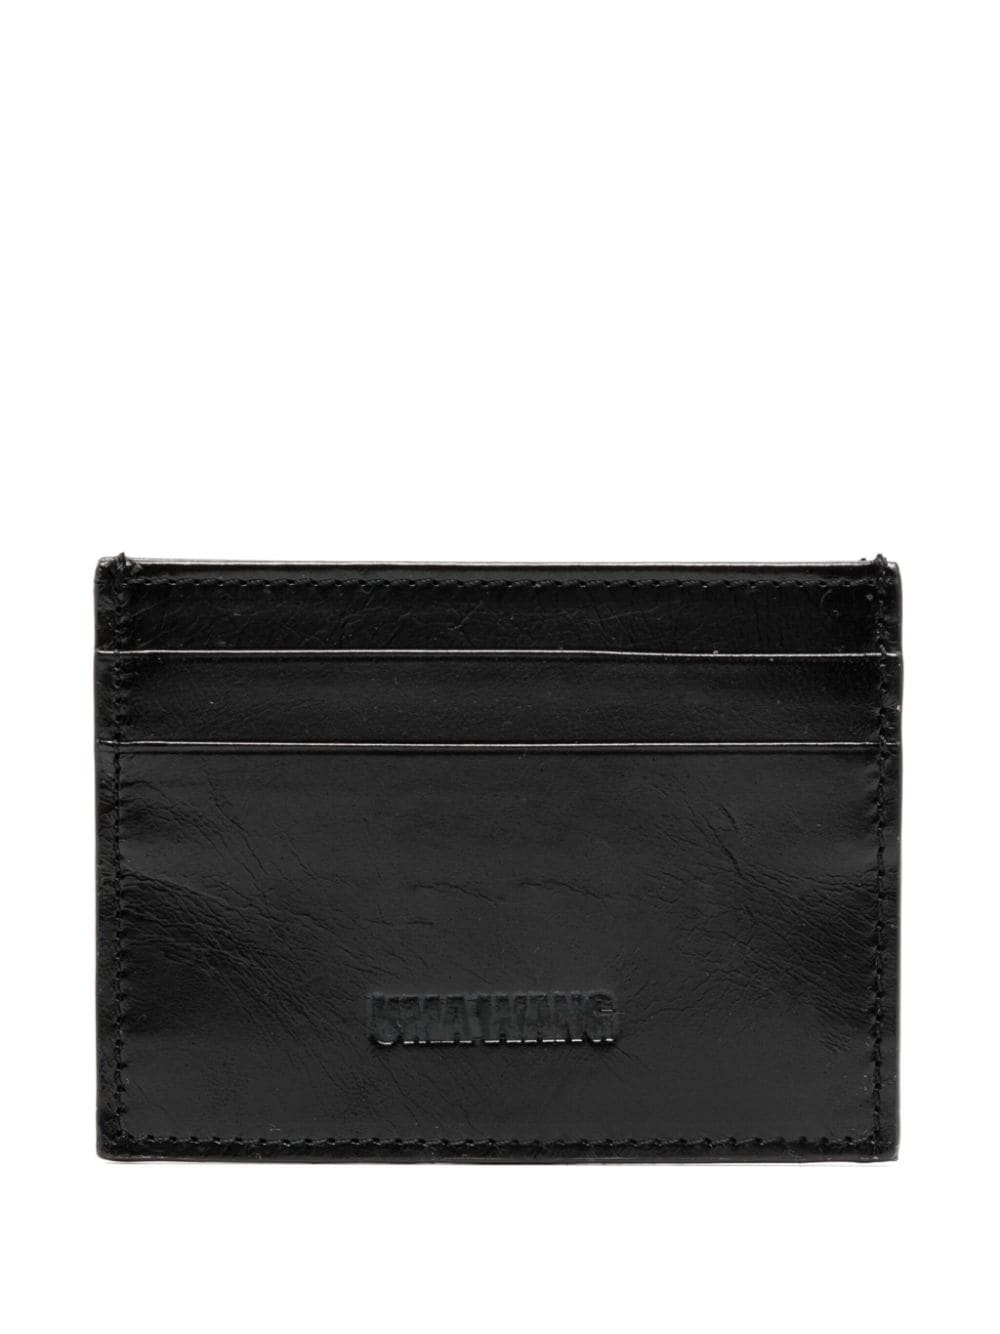 debossed-logo leather cardholder - 1